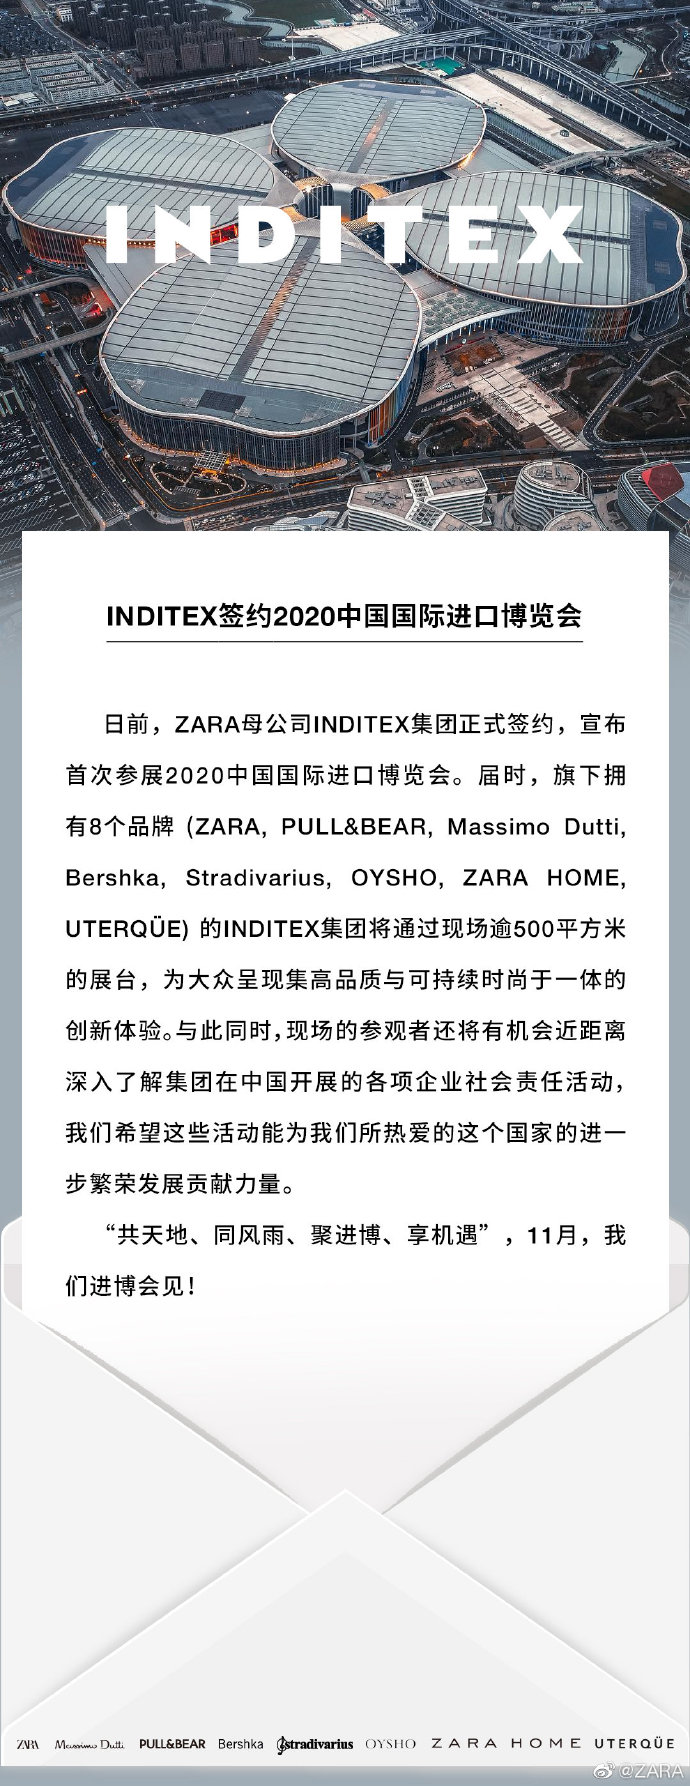 优衣库、历峰集团之后 Zara母公司也宣布首次参加中国进博会